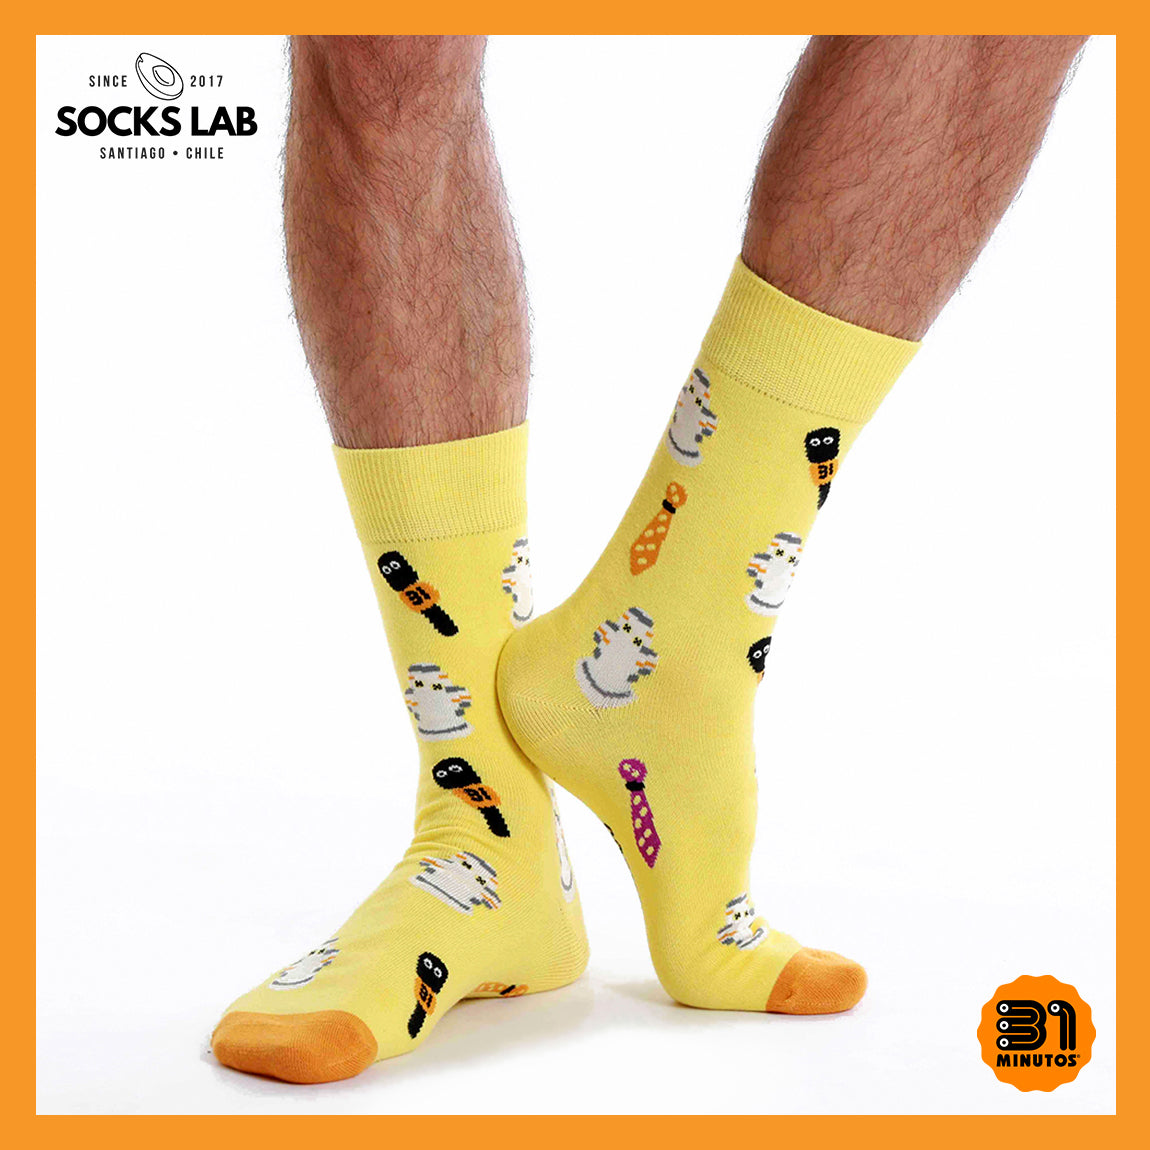 Calcetines con diseño Socks Lab - Tulio Triviño - 31 minutos